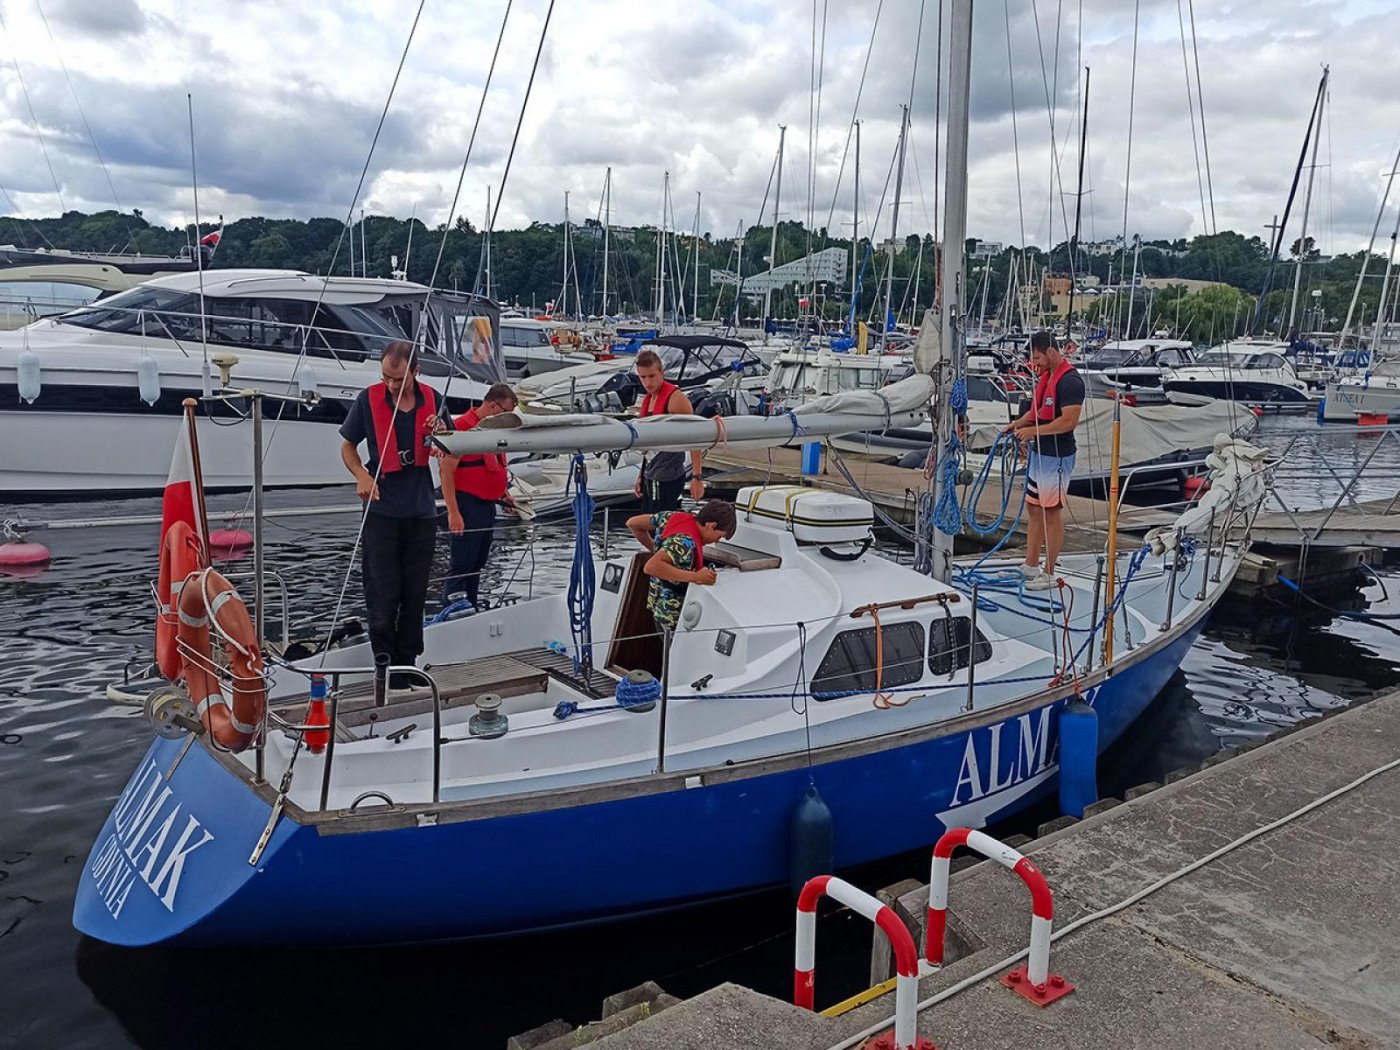 Uczestnicy kursu uczyli się żeglarskich umiejętności m.in. na pokładzie jachtu s/y Almak, fot. Uniwersytet Morski w Gdyni